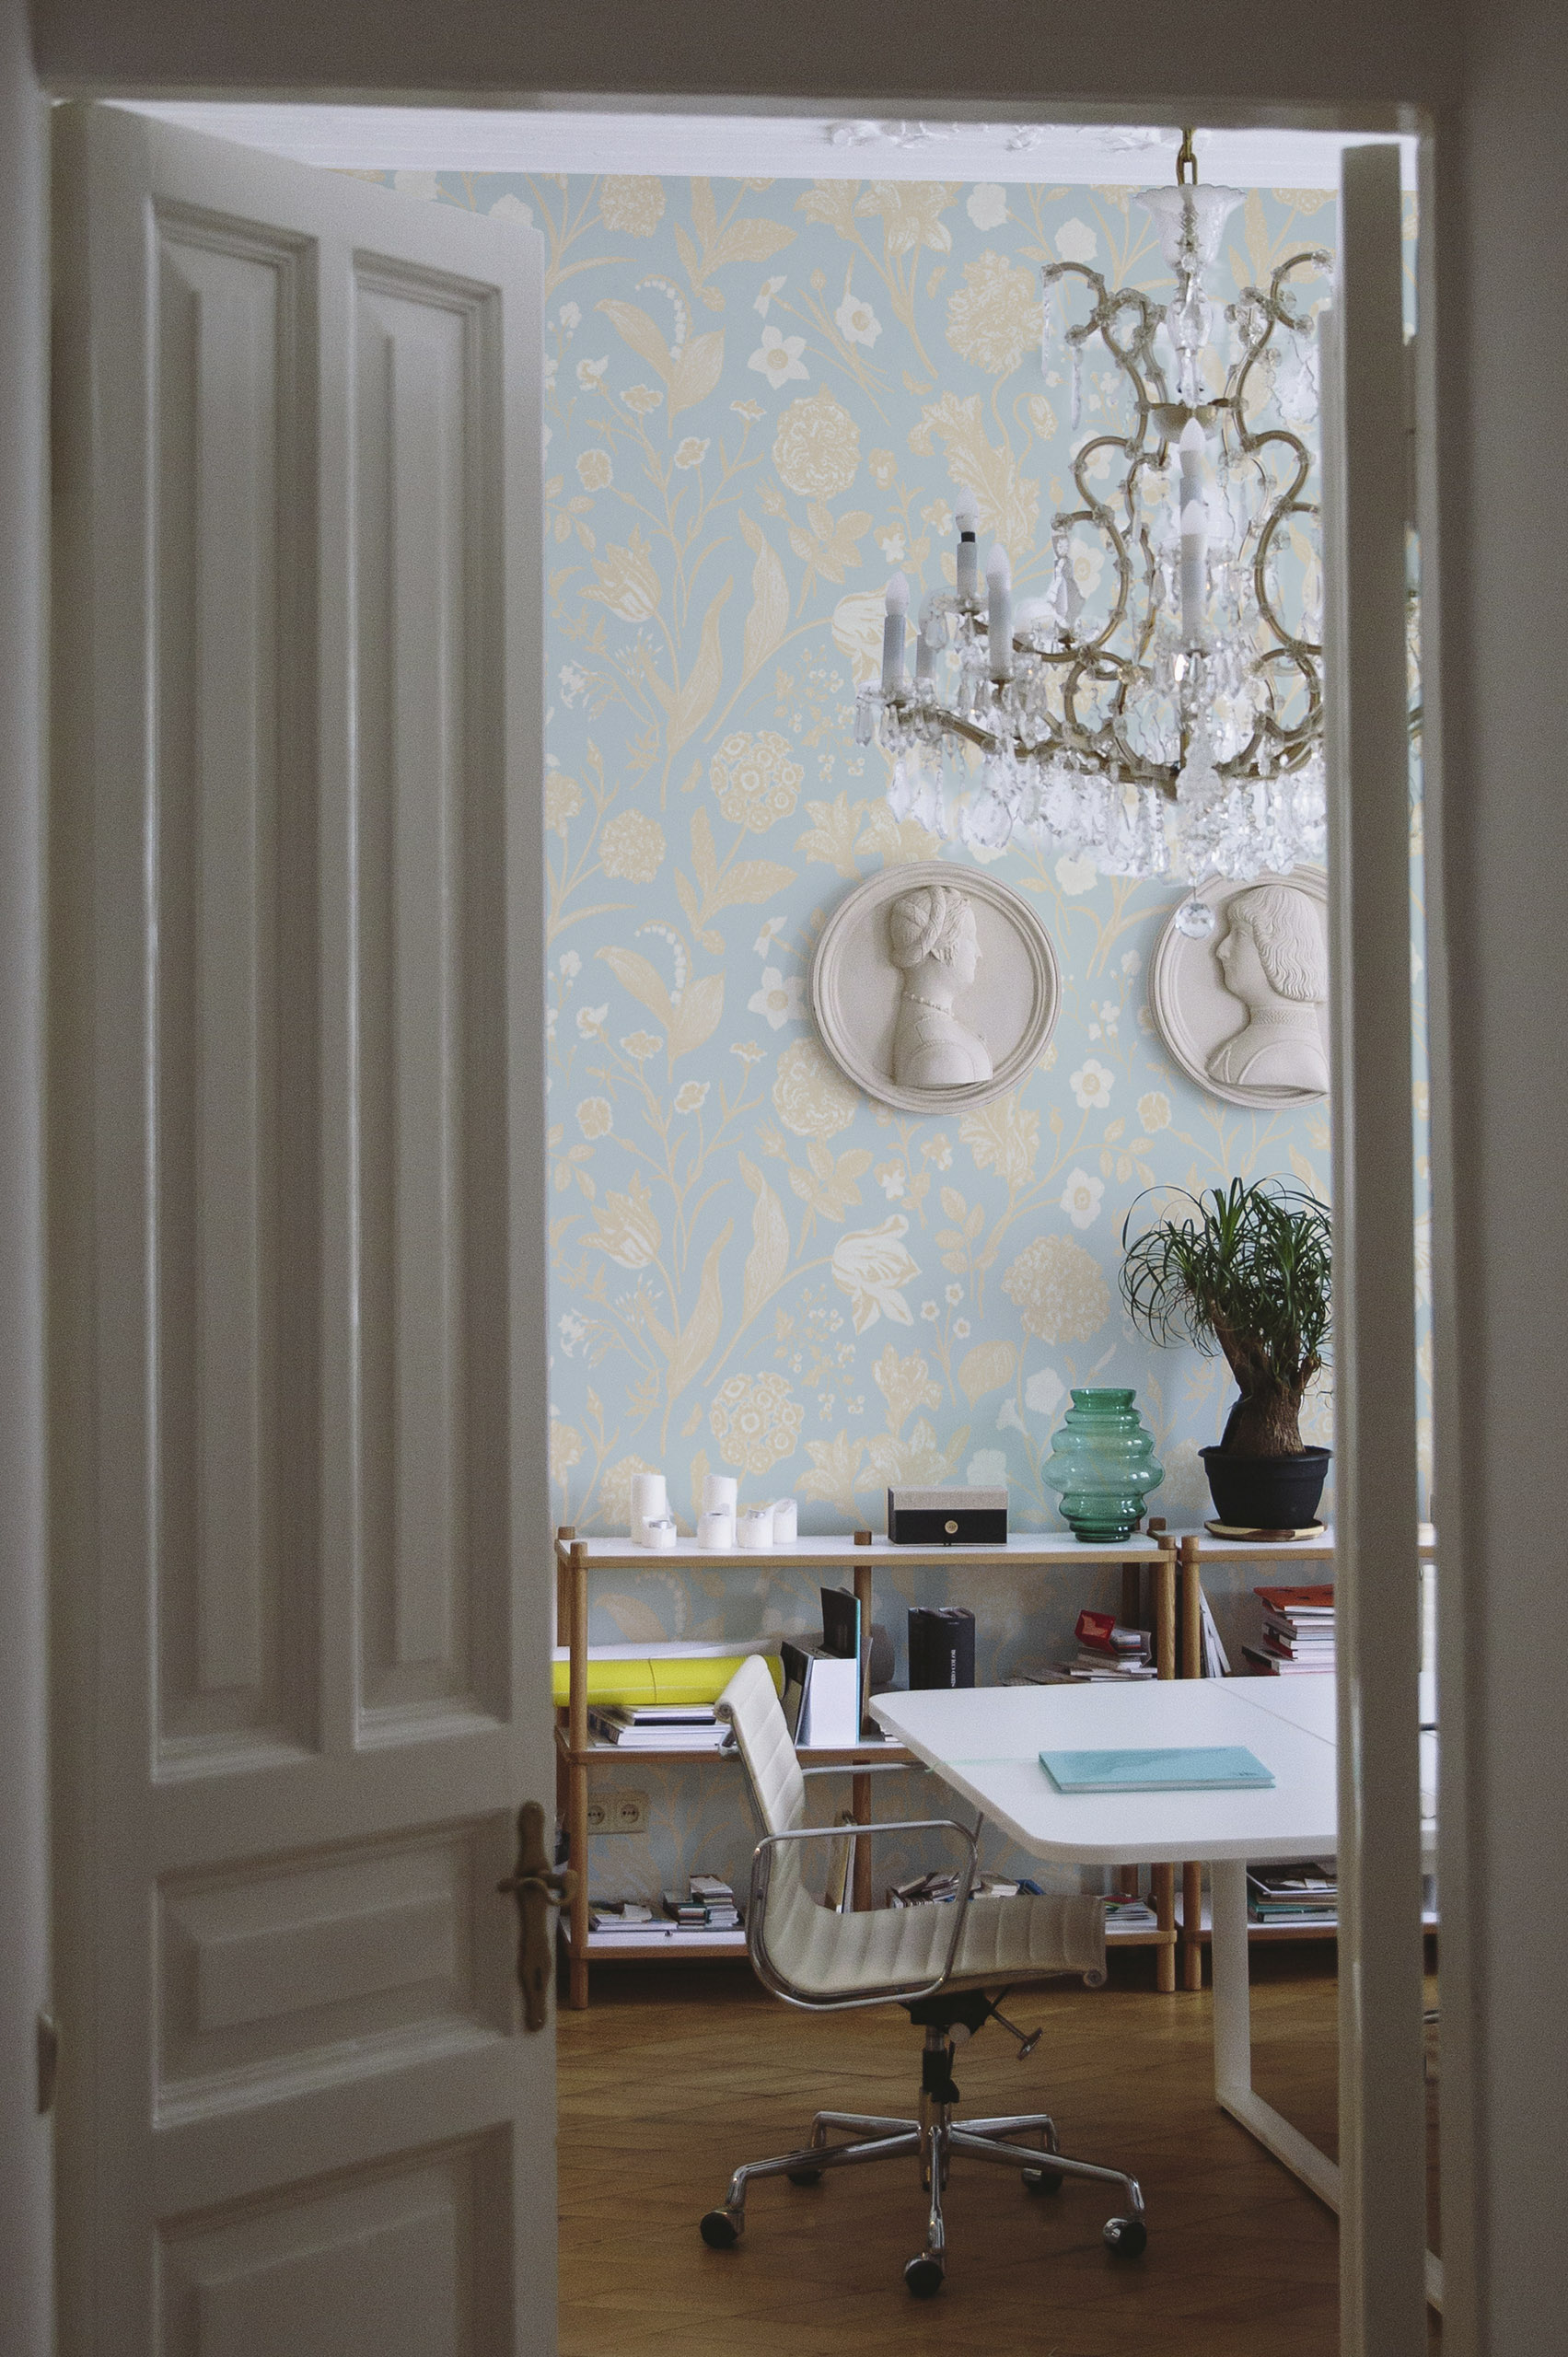 Papier peint floral et végétal bleu et jaune qui agrémente la décoration d'un magnifique bureau !